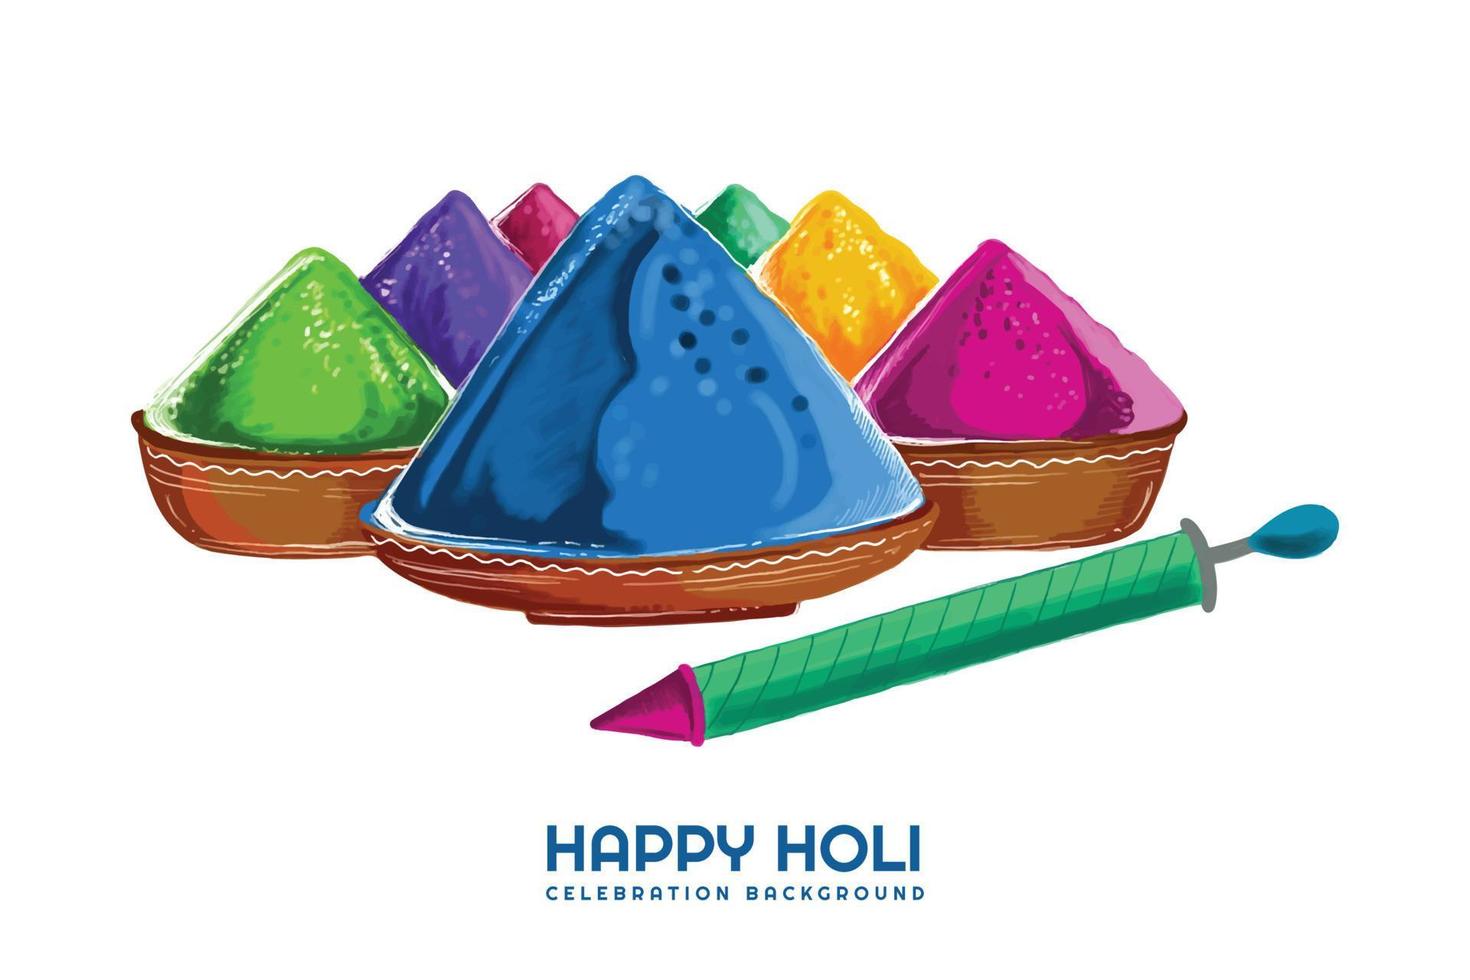 joyeux holi festival de printemps indien de couleurs carte de voeux vecteur